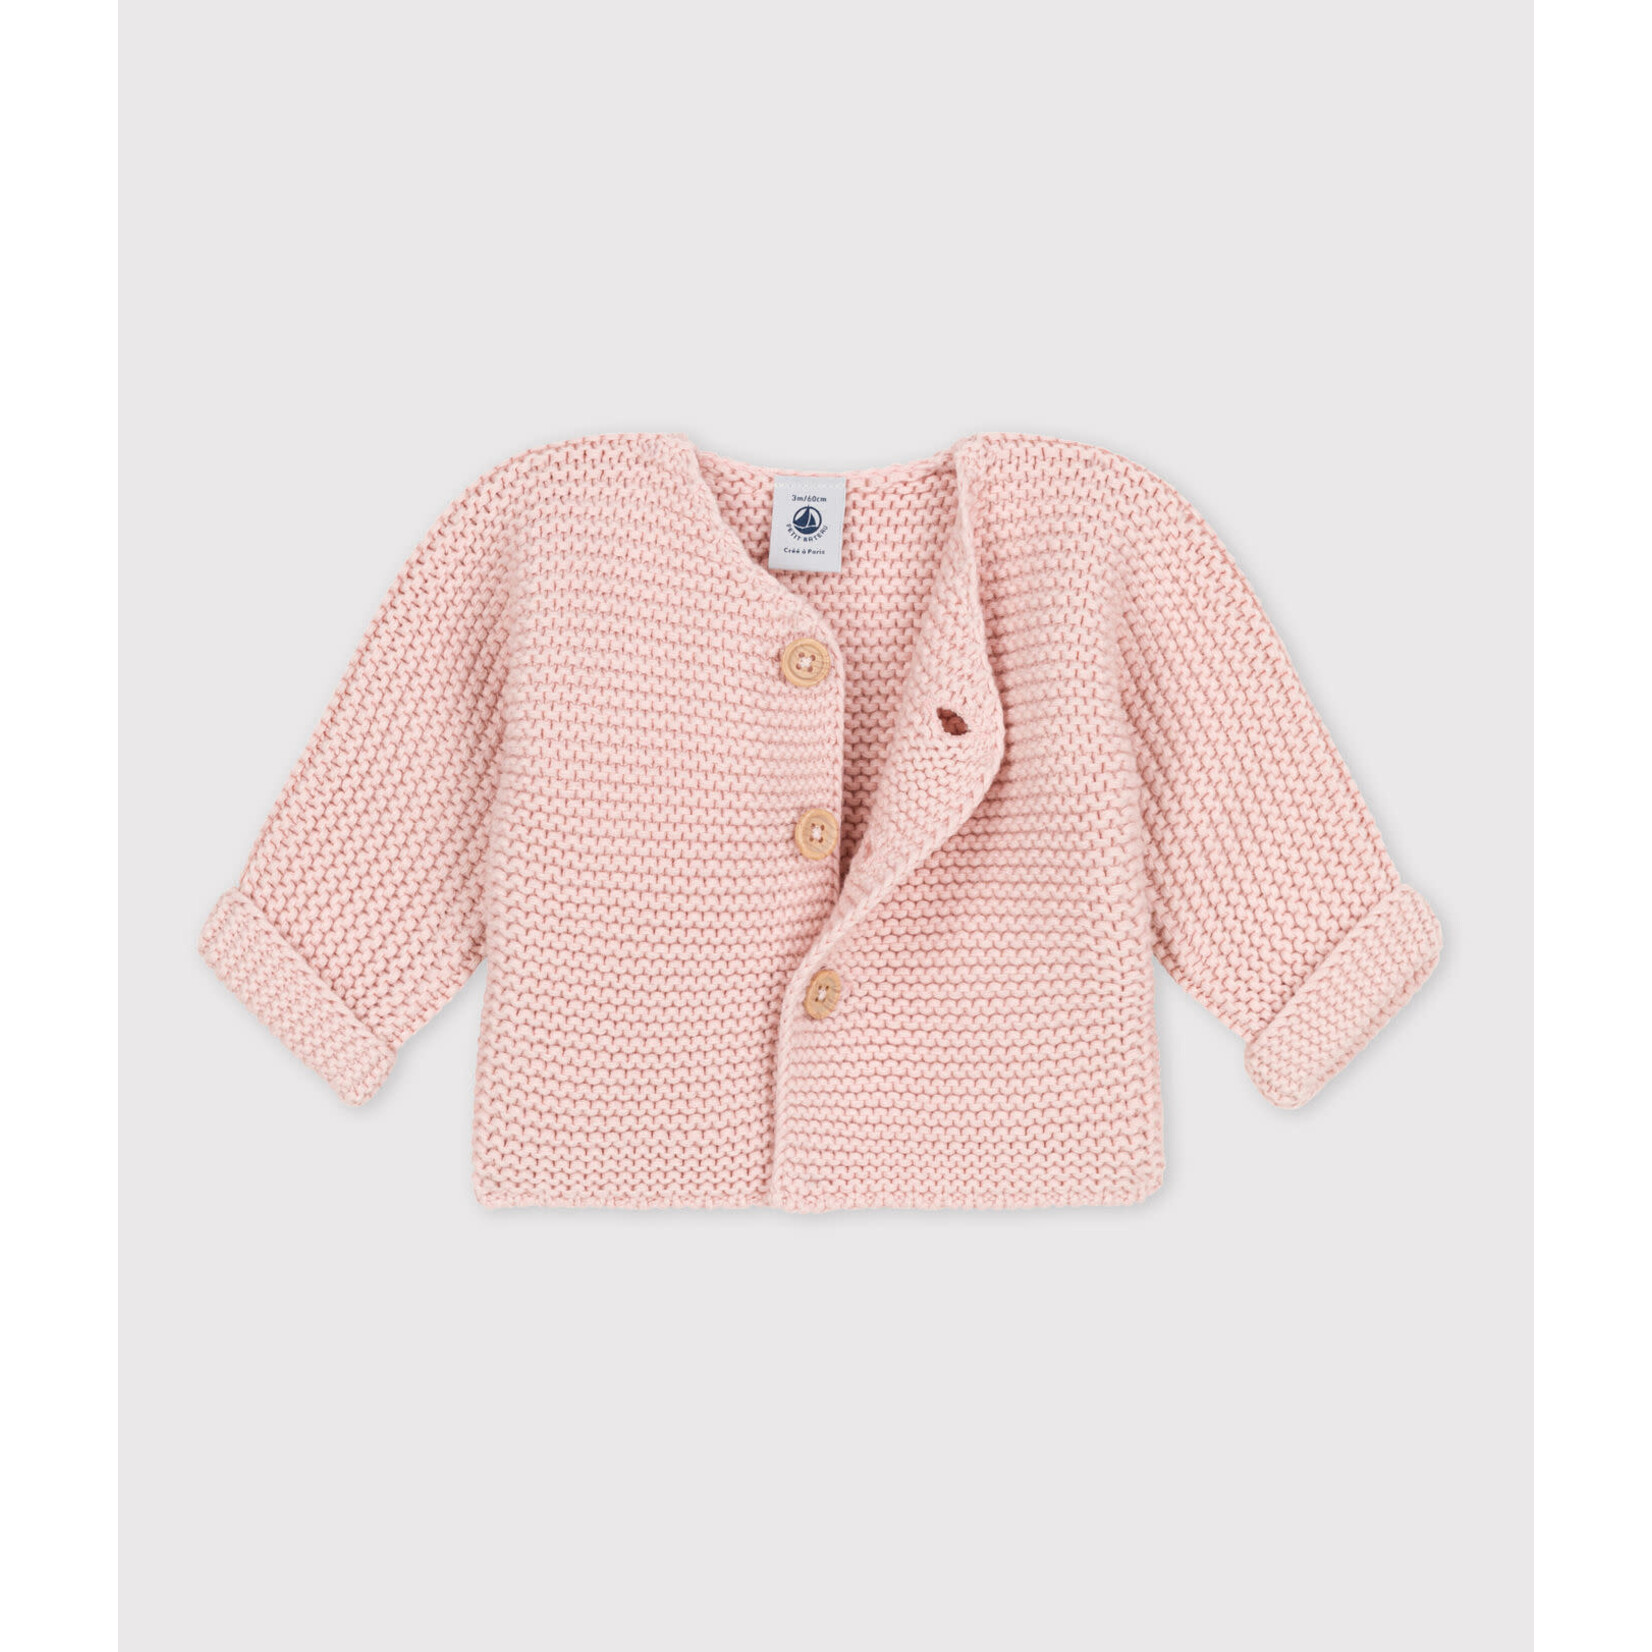 Petit Bateau Cardigan tricot point mousse rose saline